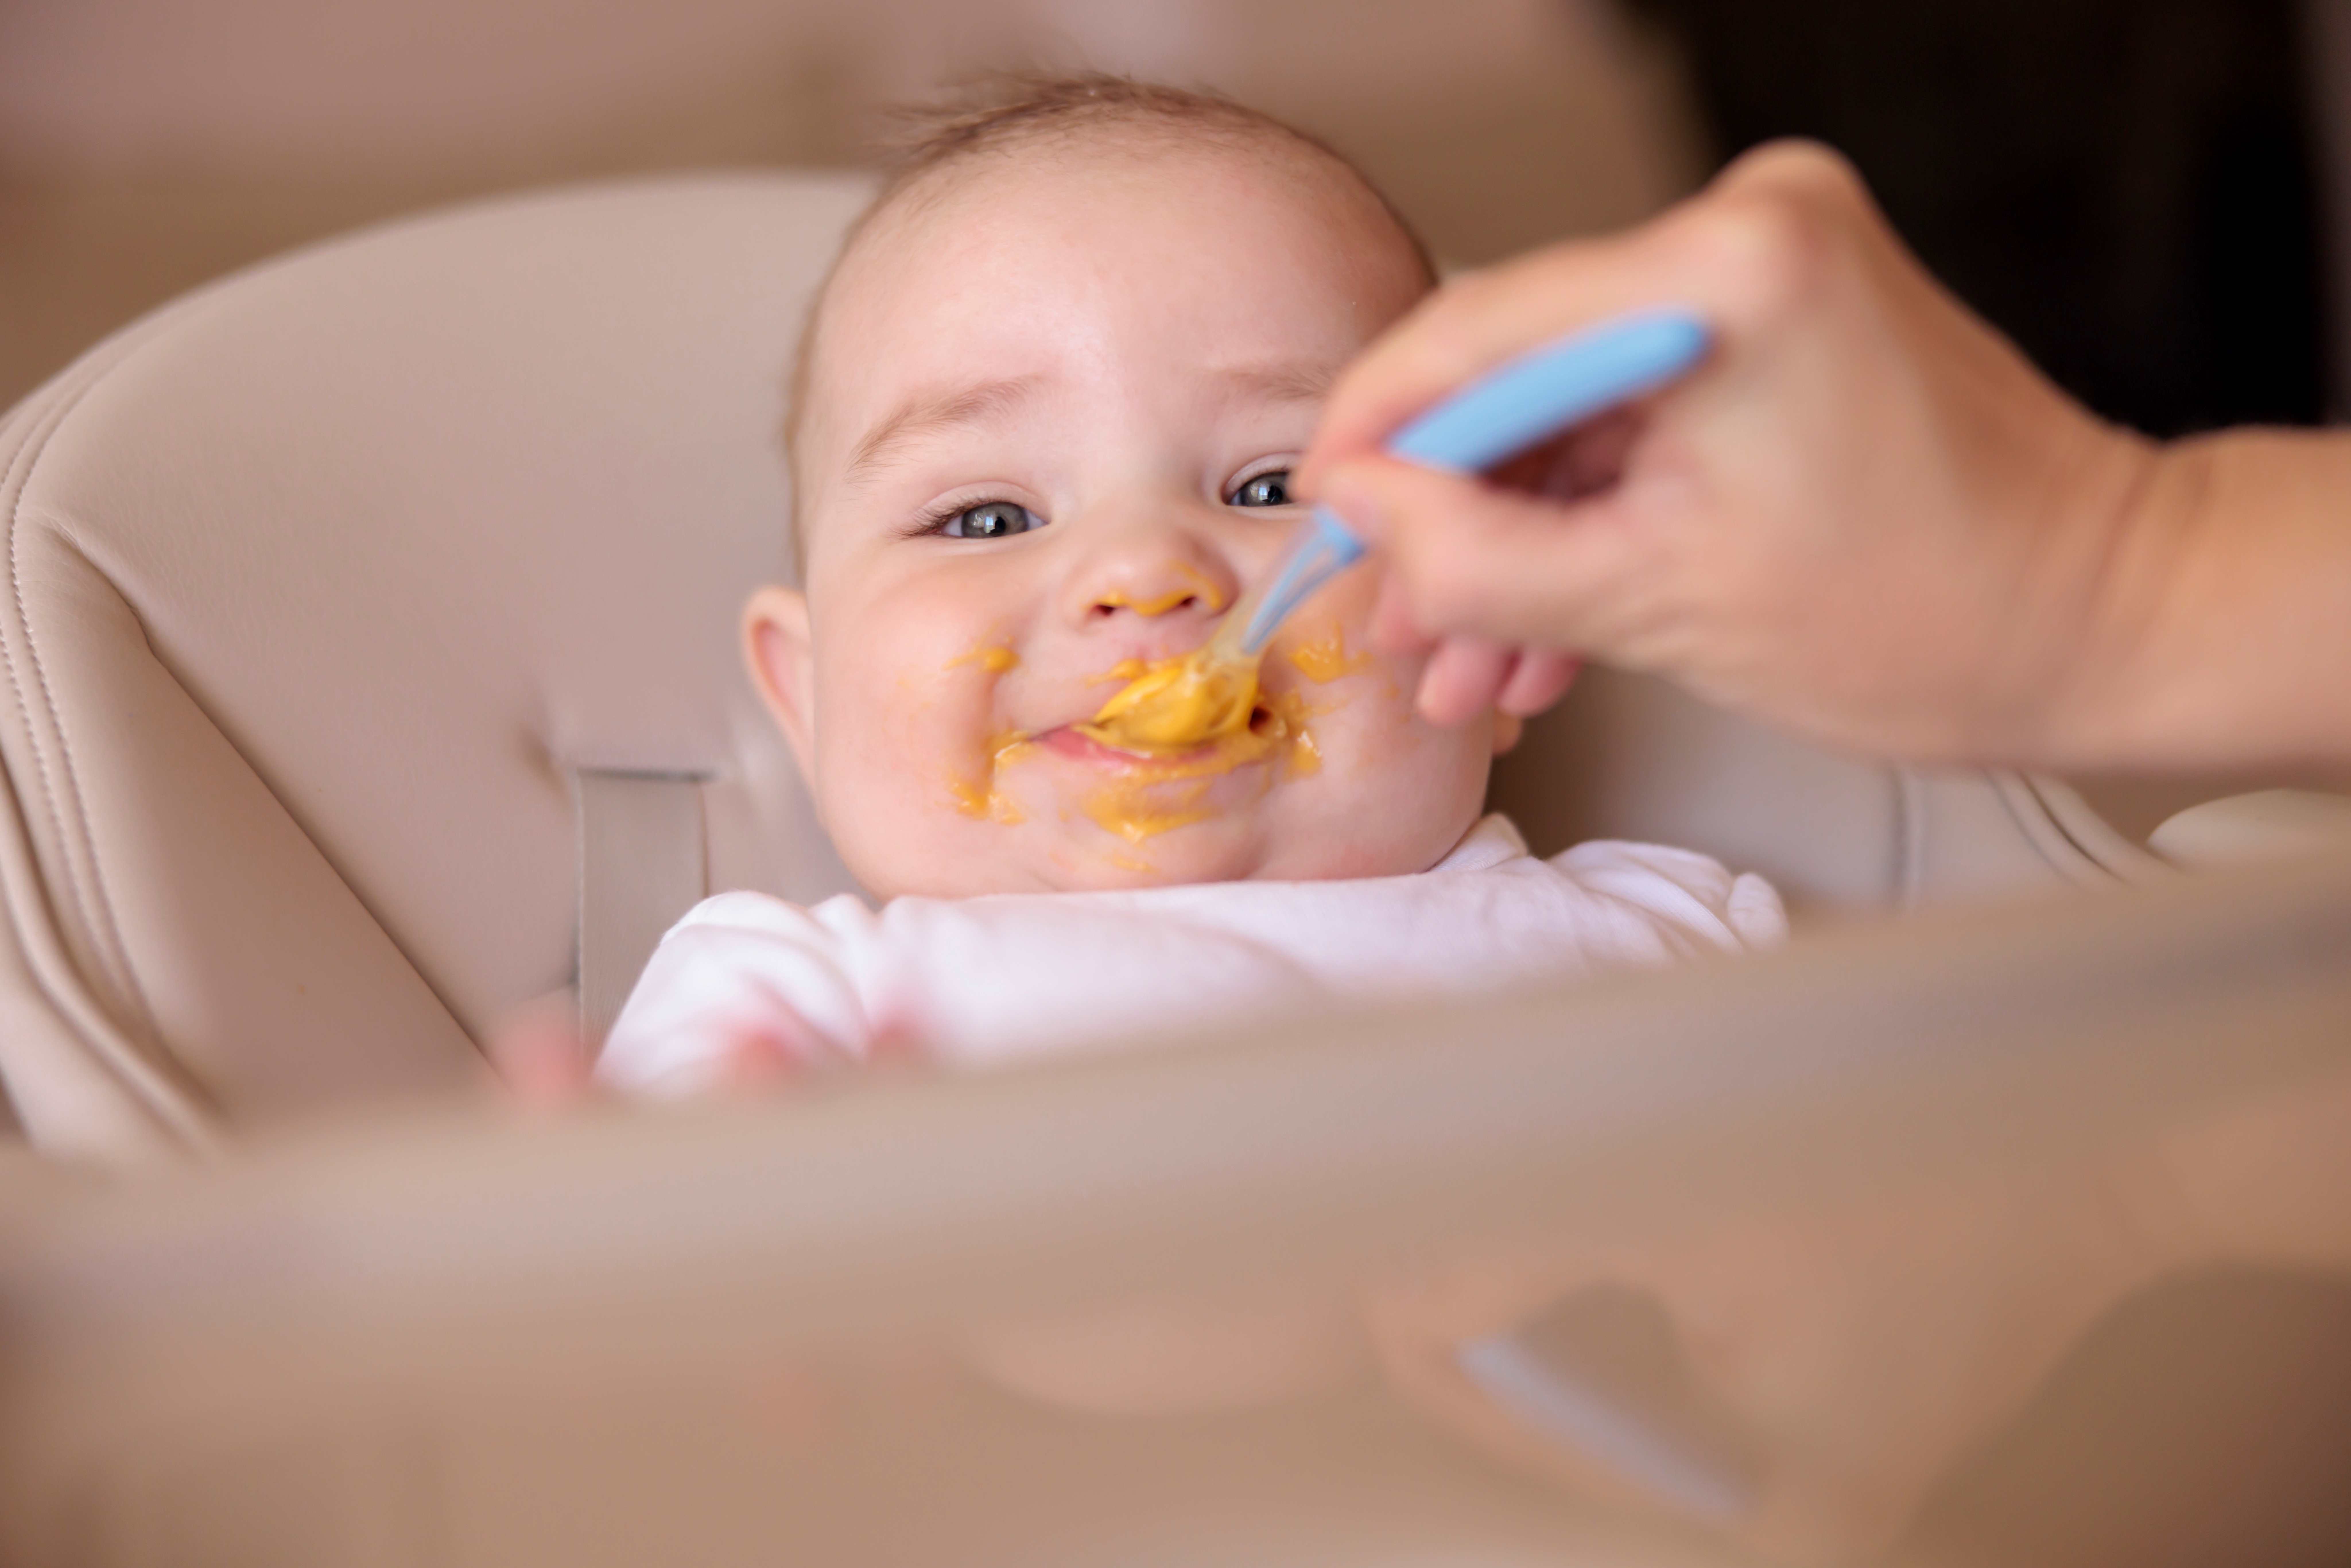 Verbraucherzentrale: Web-Seminar – richtige Ernährung für Säuglinge